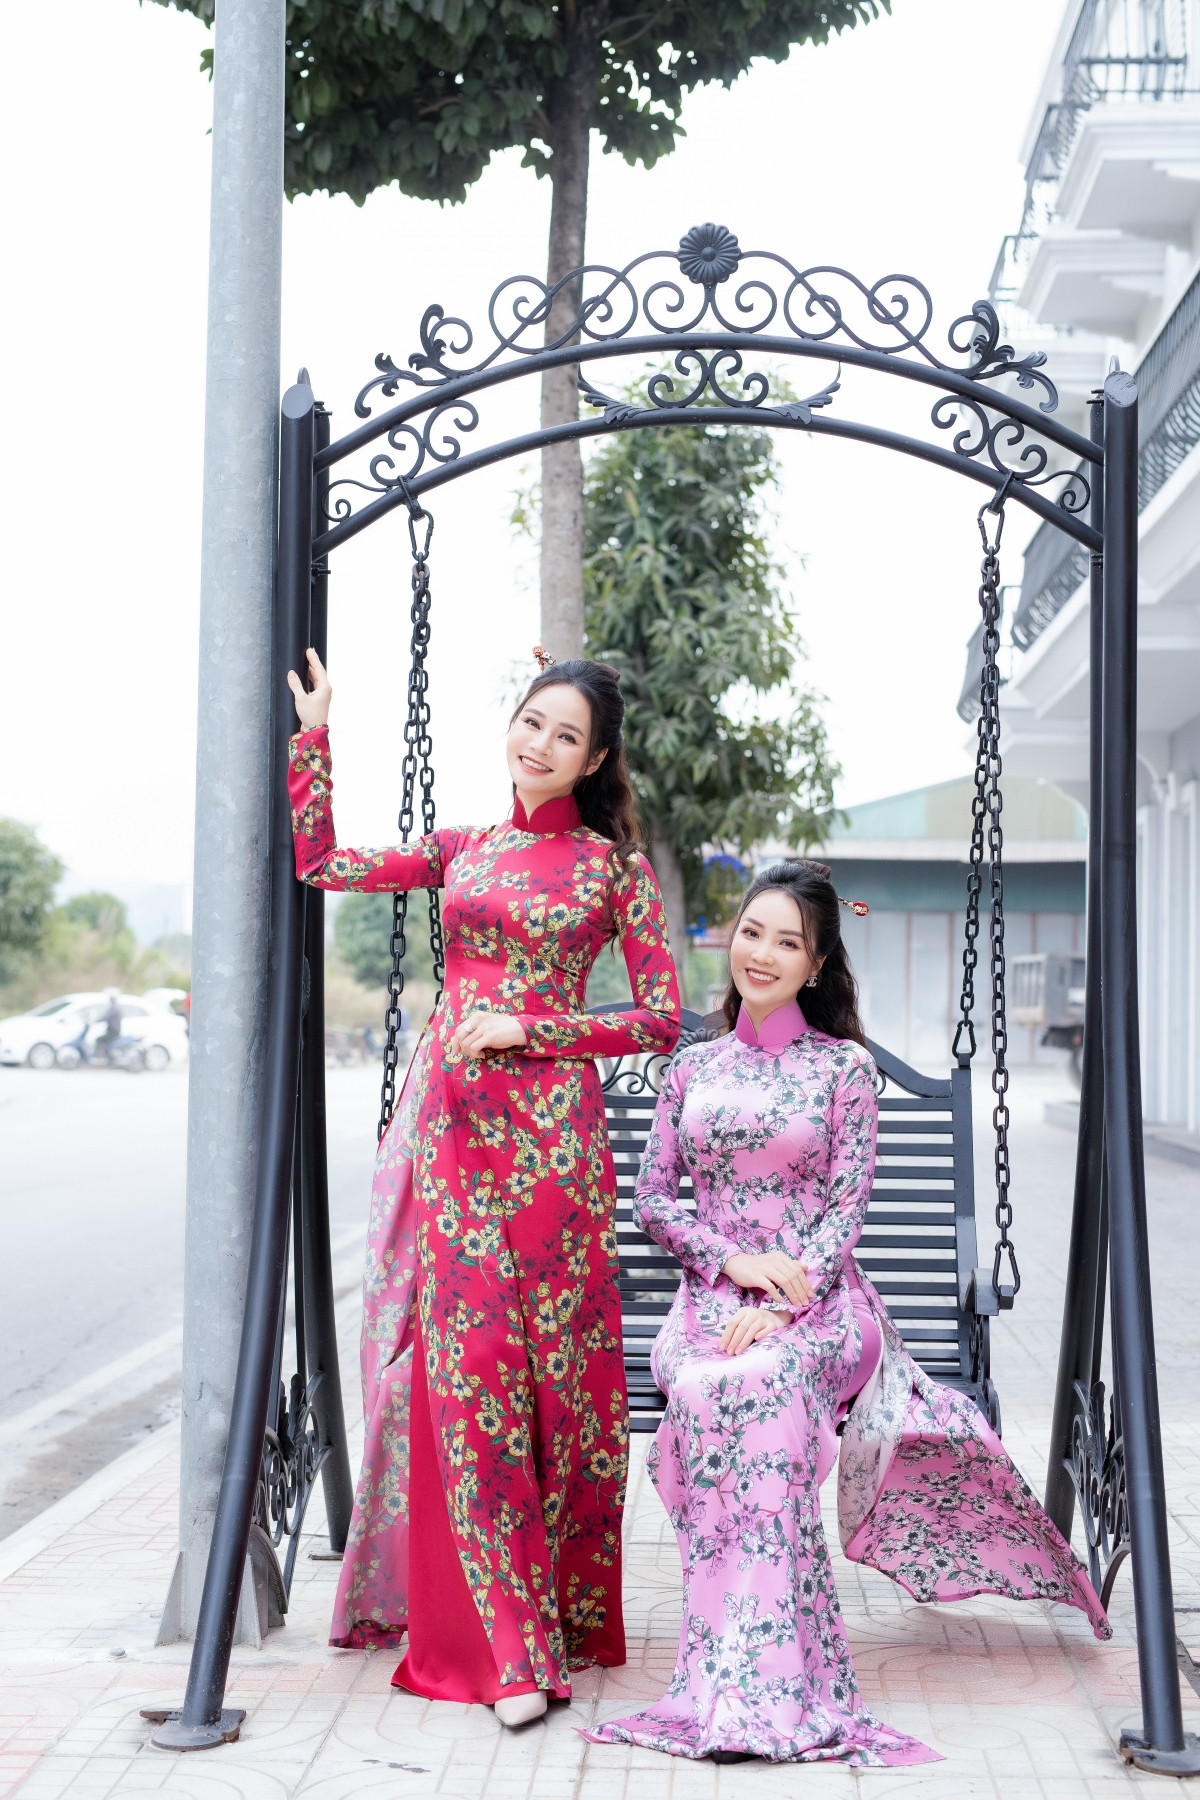 Vũ Thu Trang sử dụng nhiều màu sắc, họa tiết để giúp chiếc áo dài trở nên nổi bật, tuy nhiên chị rất đơn giản trong kiểu dáng.